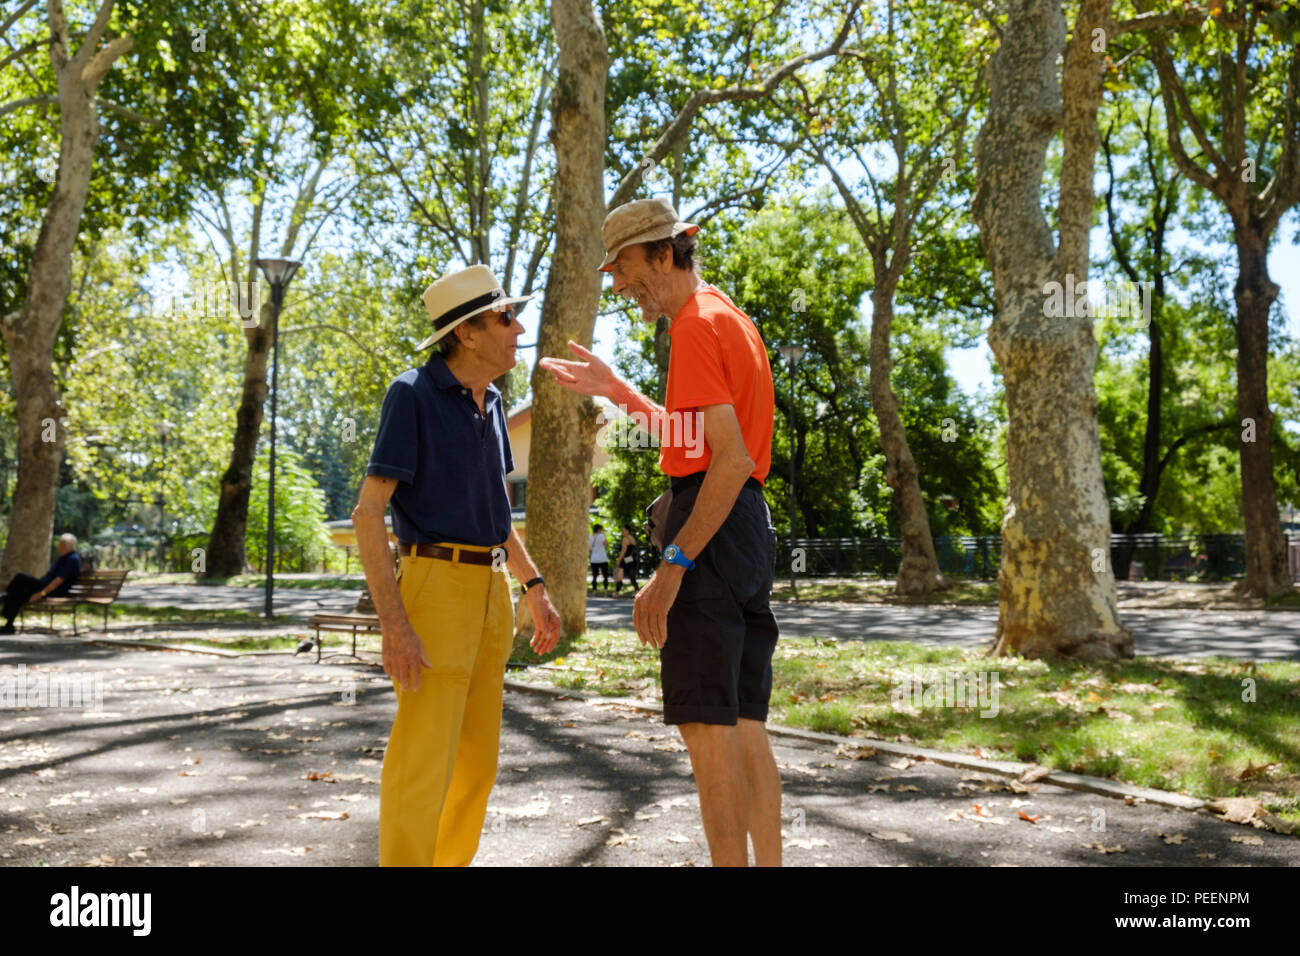 Uomini italiani vestiti con colori, con cappelli di paglia che si incontrano e si salutano l'un l'altro in una mattinata estiva in un parco alberato. Piacenza, Italia. Foto Stock